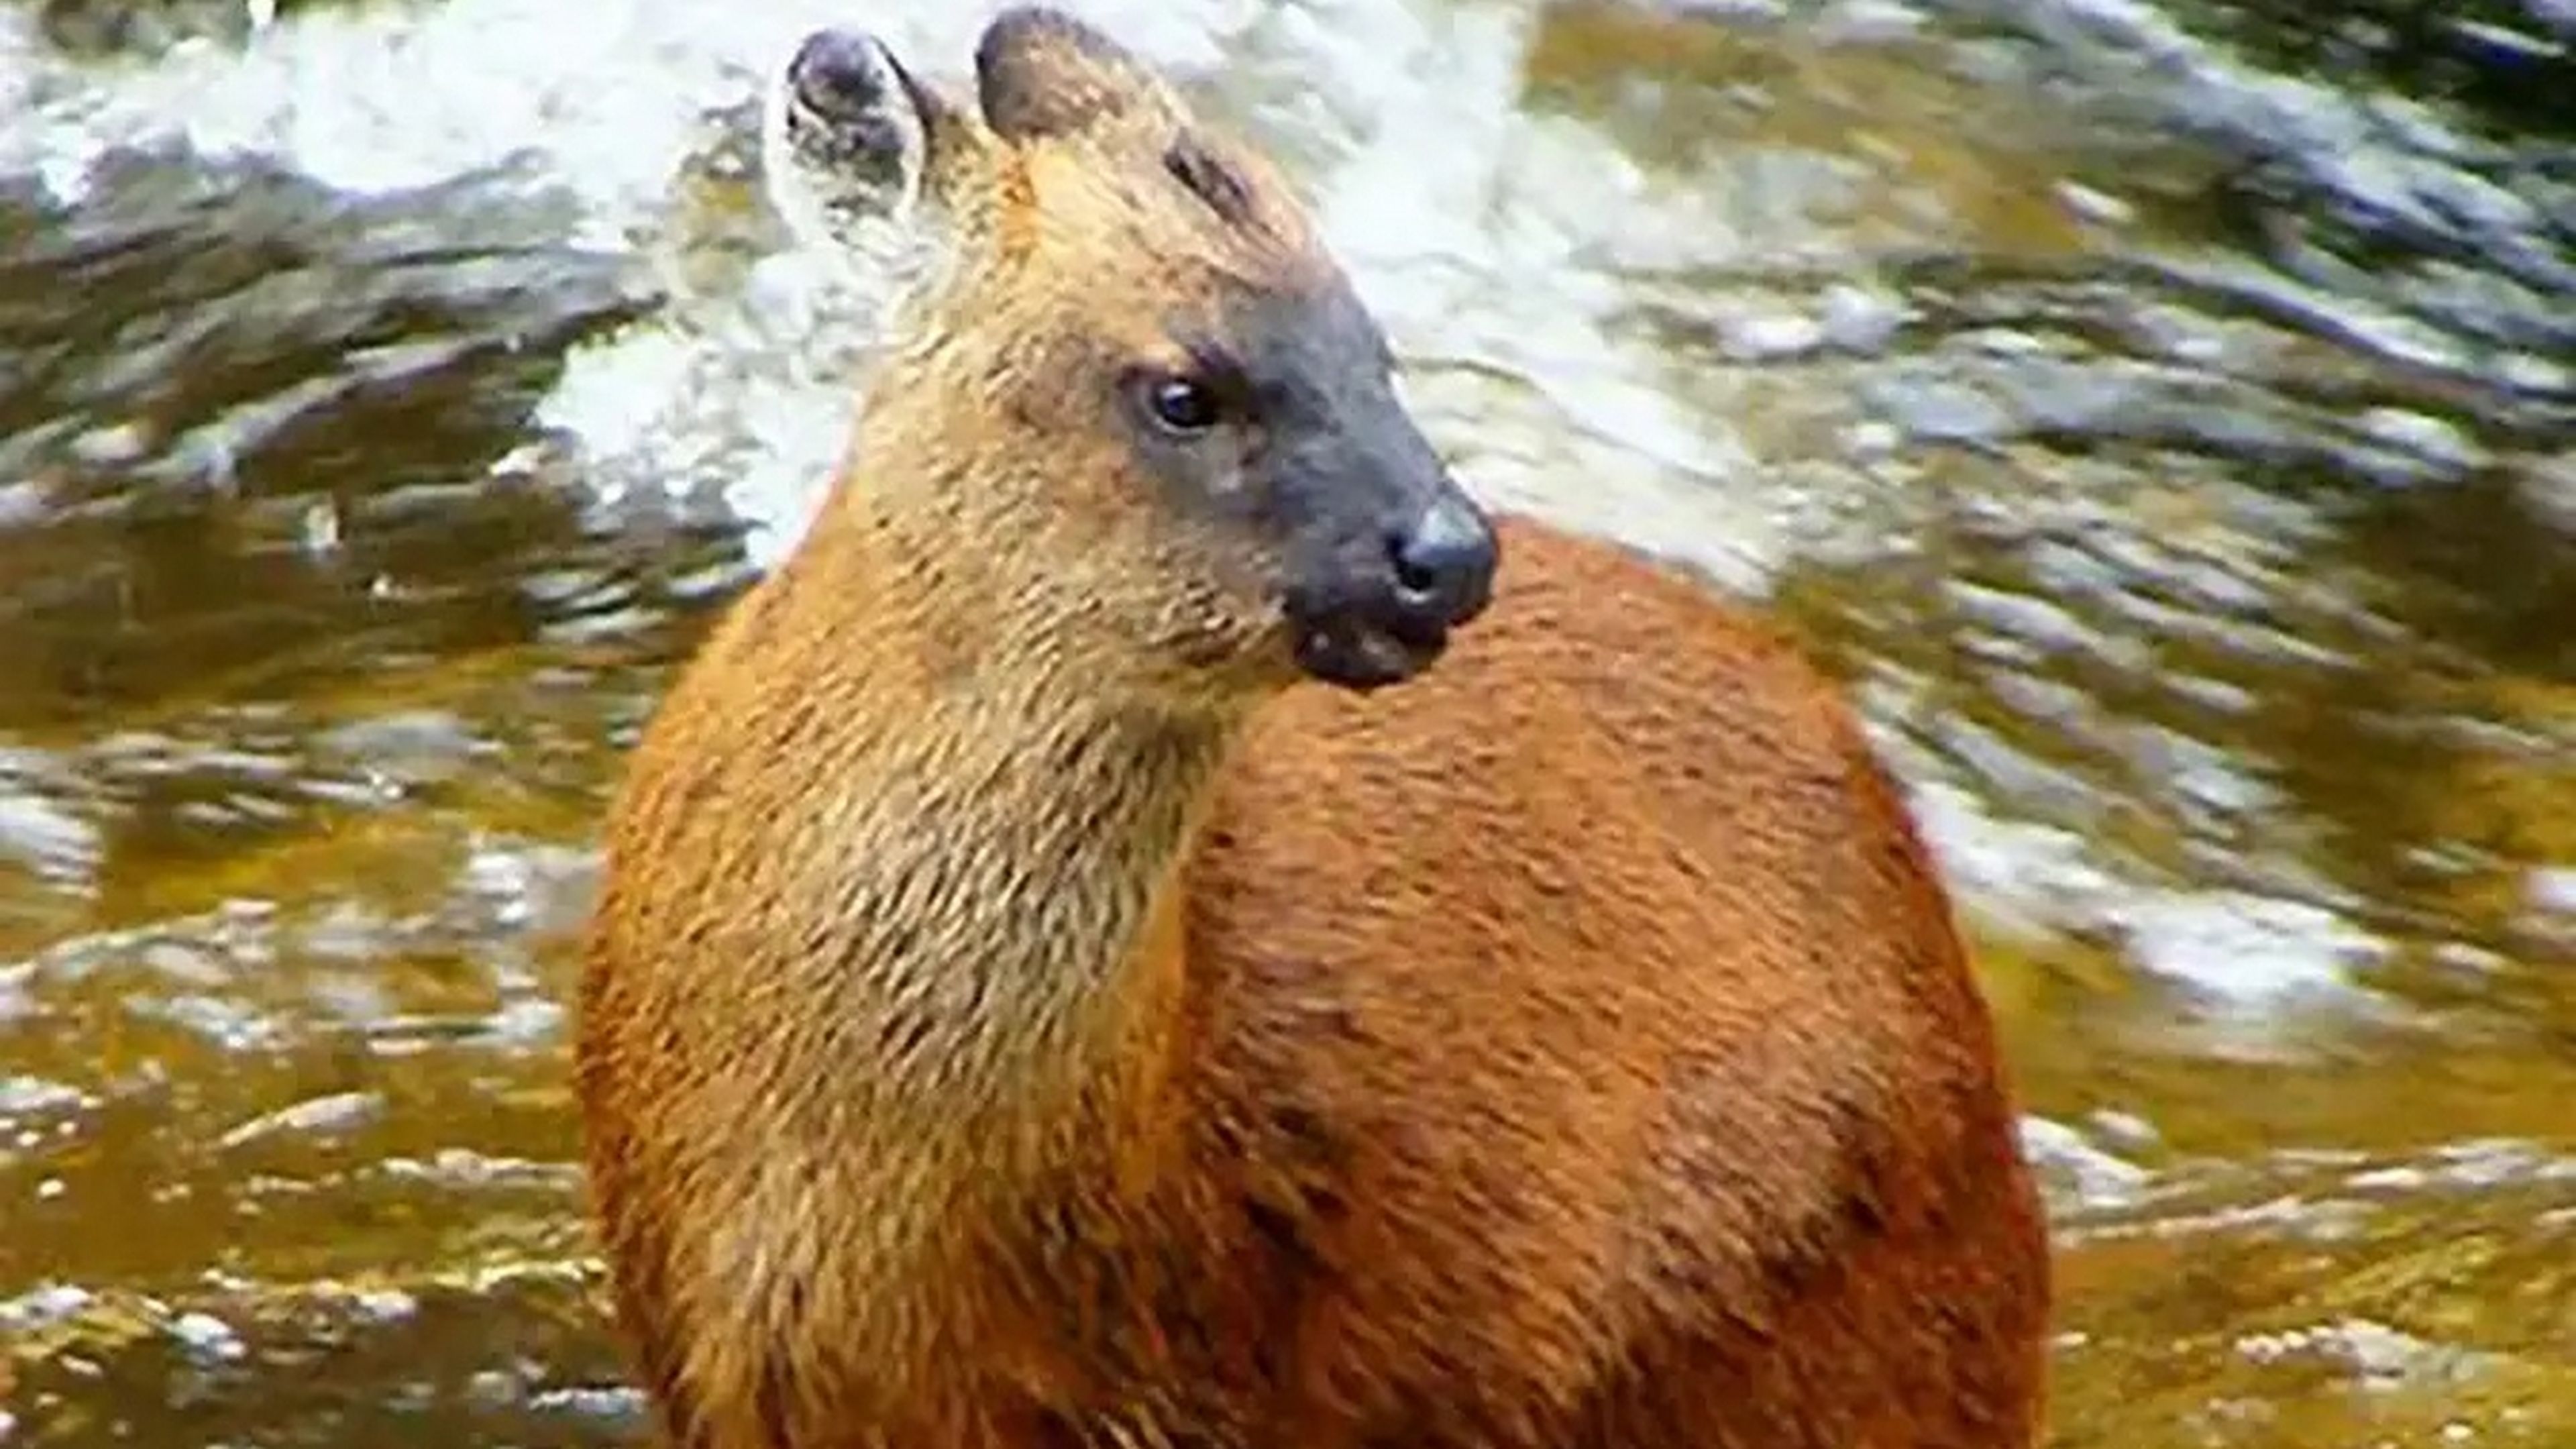 Descubren una nueva especie de ciervo enano en los Andes, la primera en 60 años